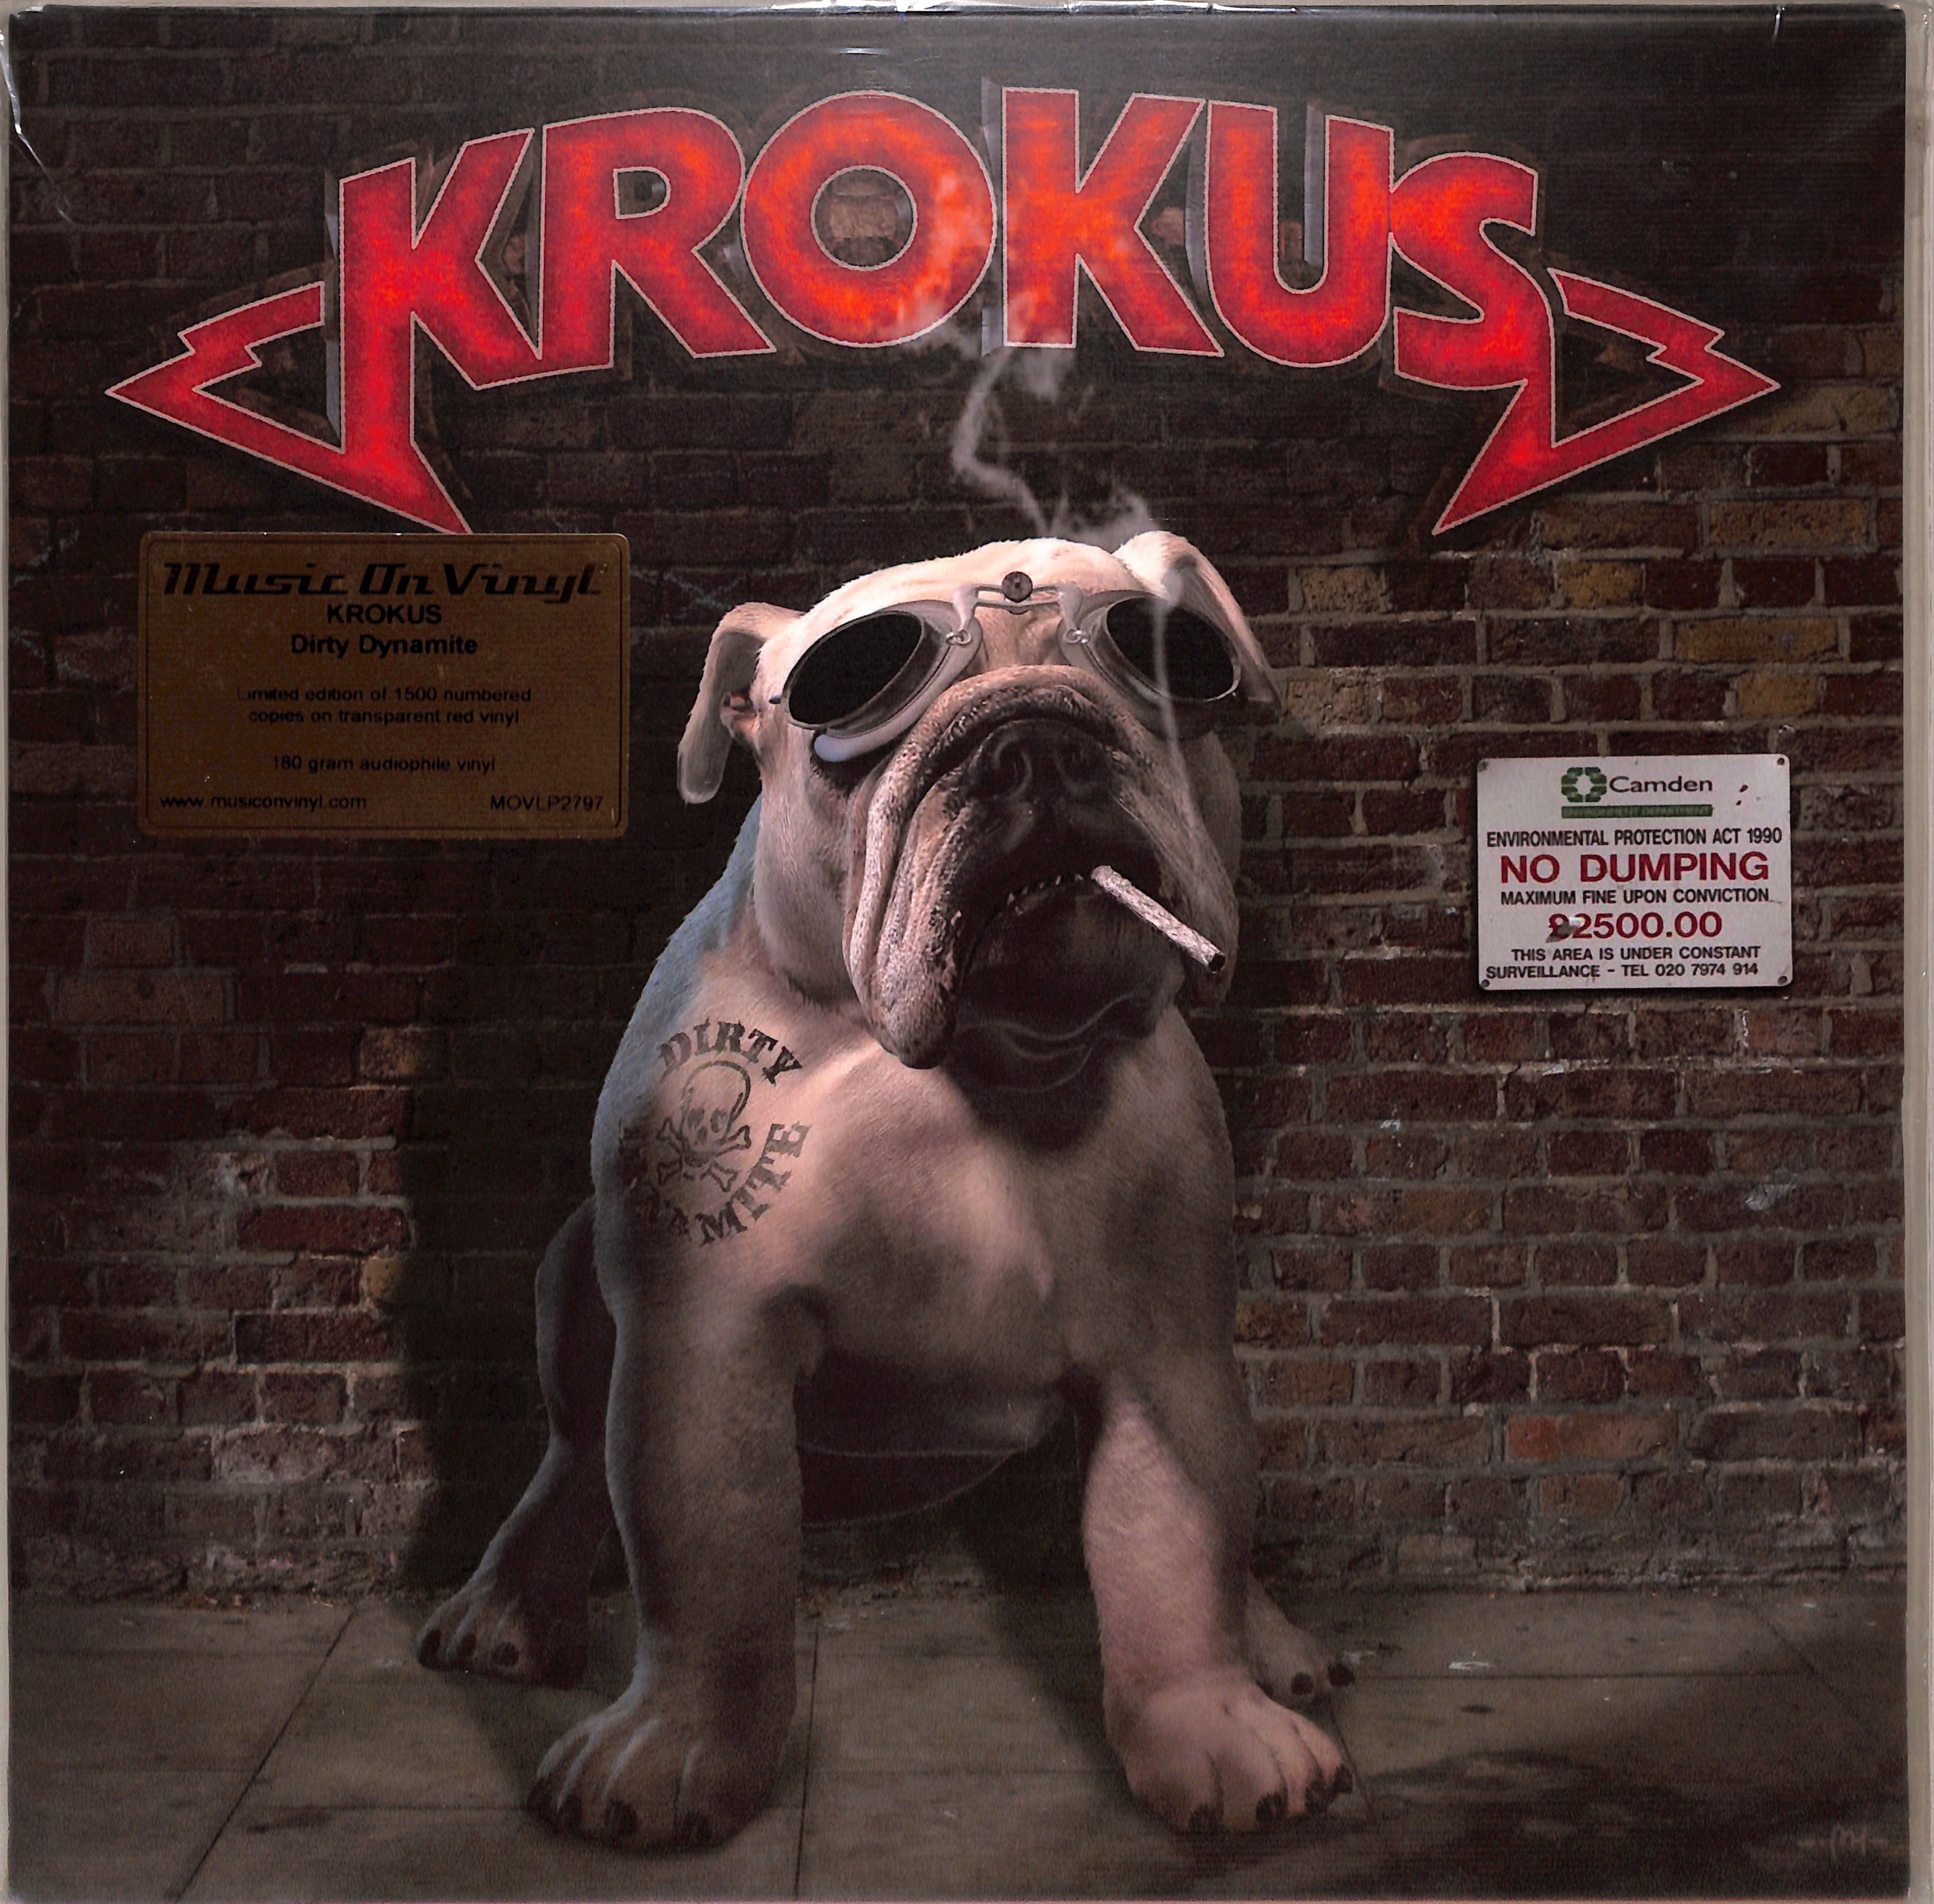 Альбом песен посвященный крокусу. Группа Krokus альбомы. Krokus Dirty Dynamite 2013. Krokus обложки альбомов. Группа Крокус обложки альбомов группы.